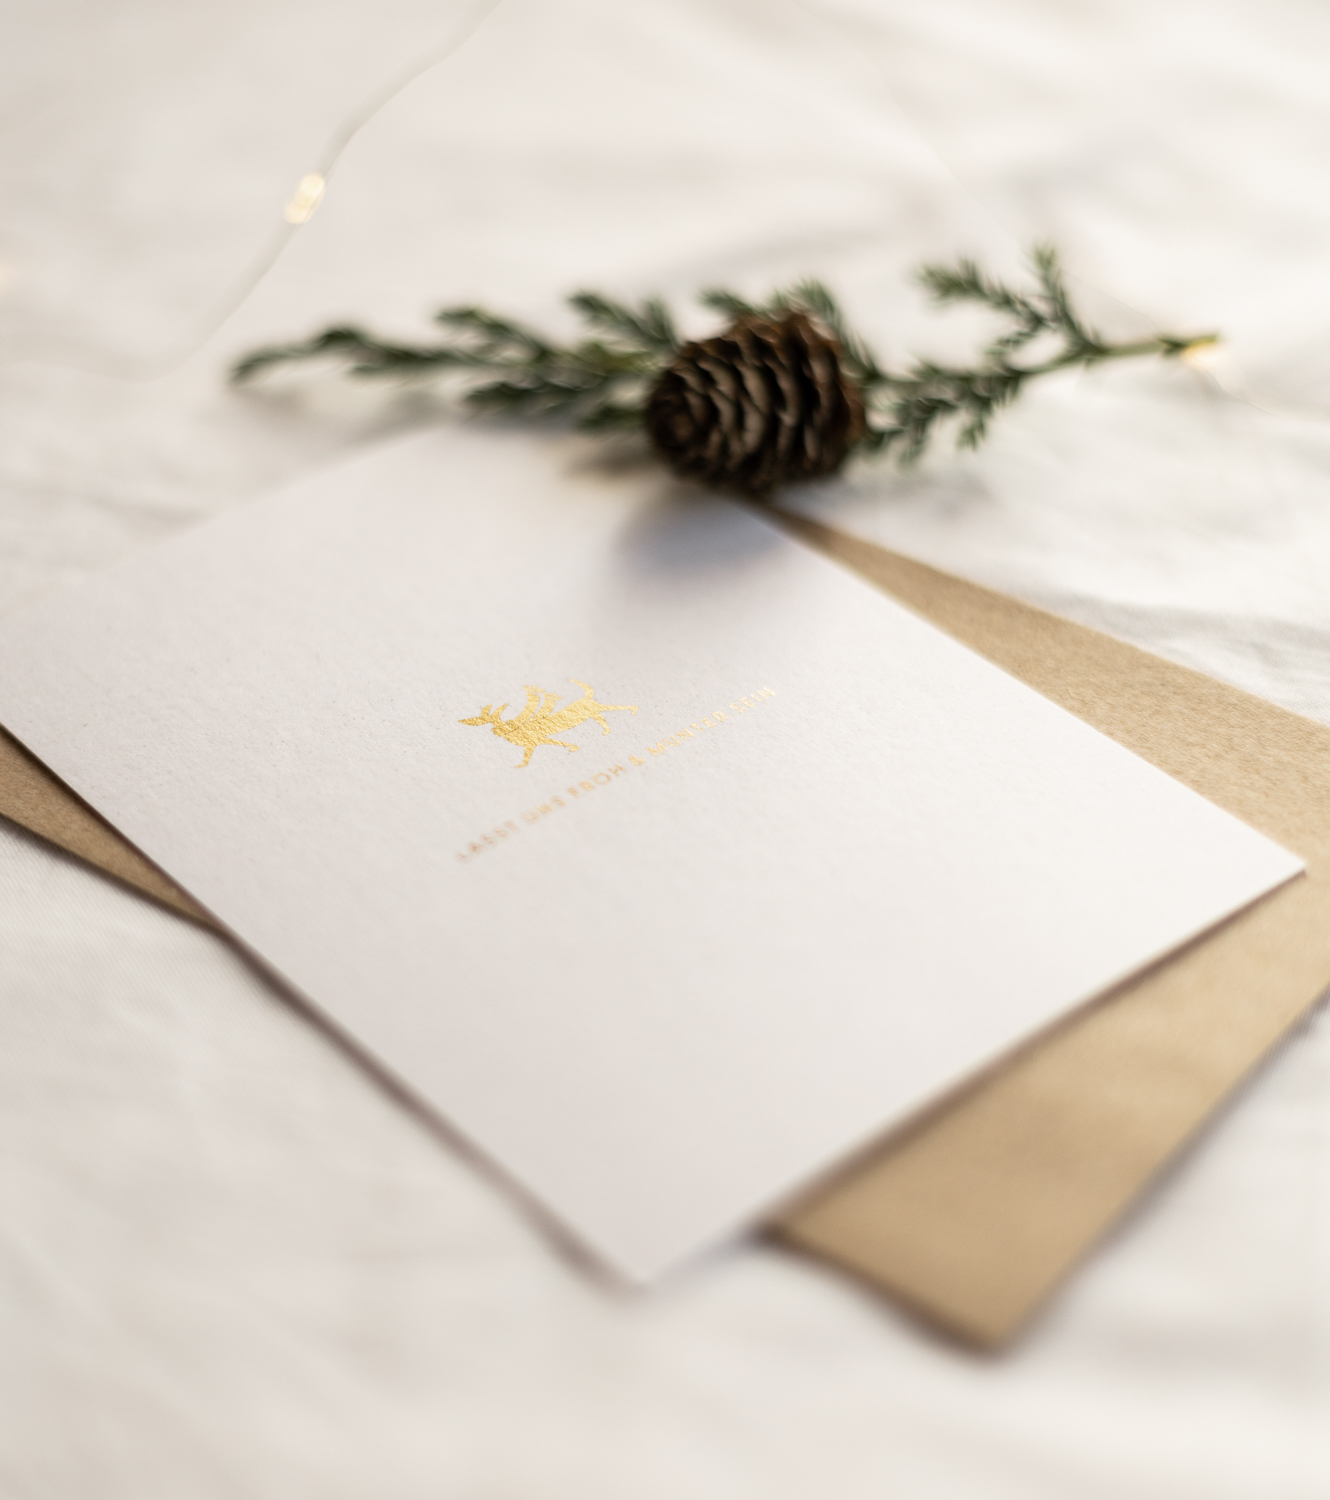 Gold glänzender Hund Weihnachtskarte Lass uns froh und munter sein